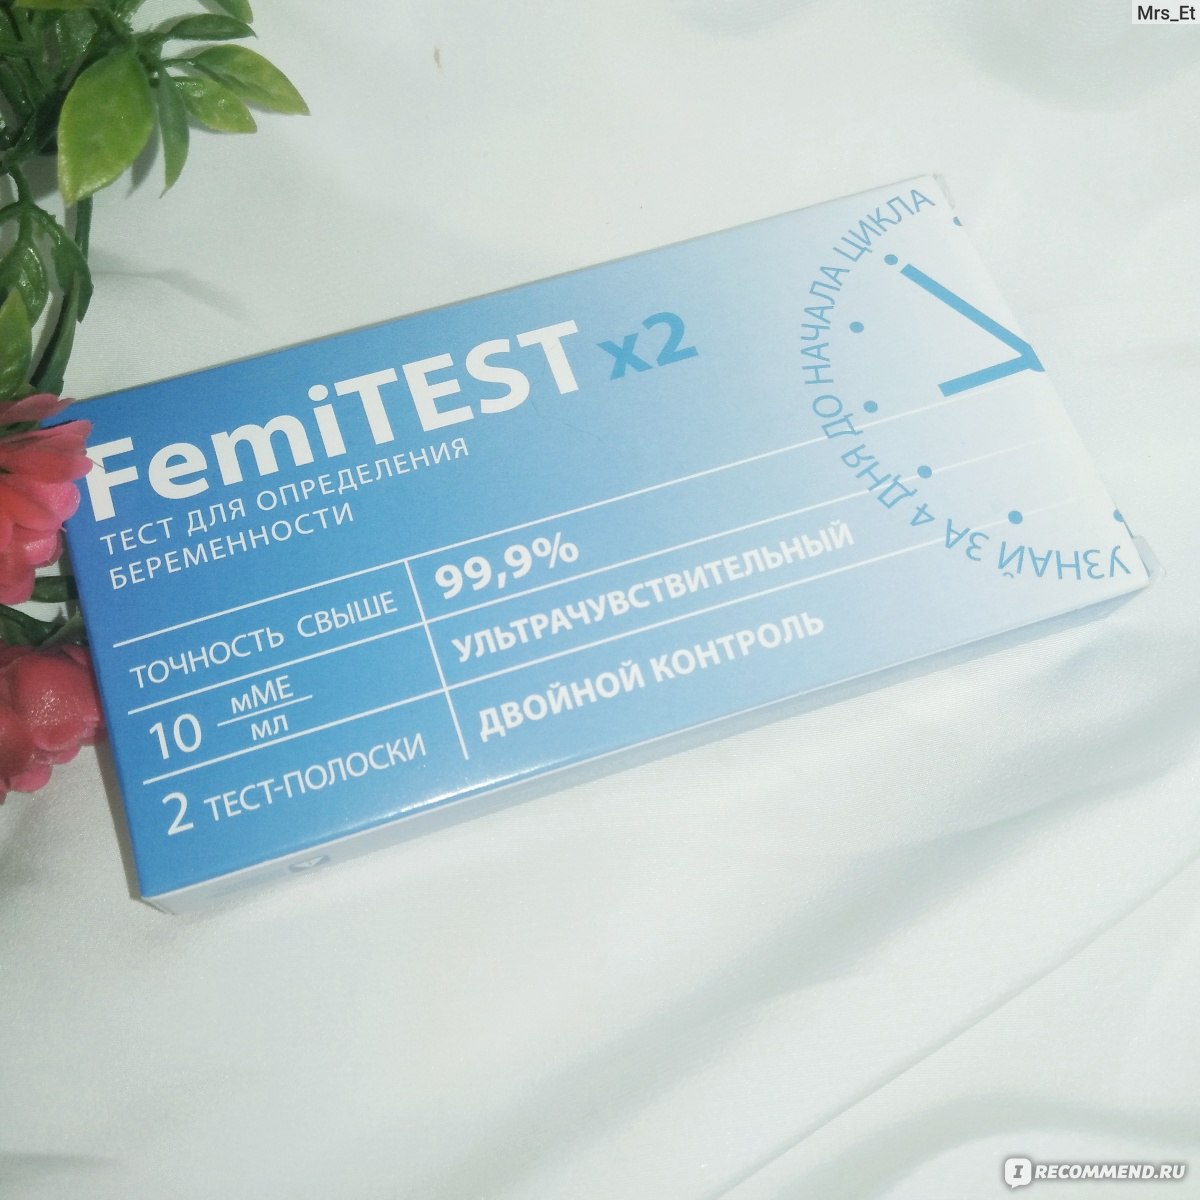 Феми тесты отзывы